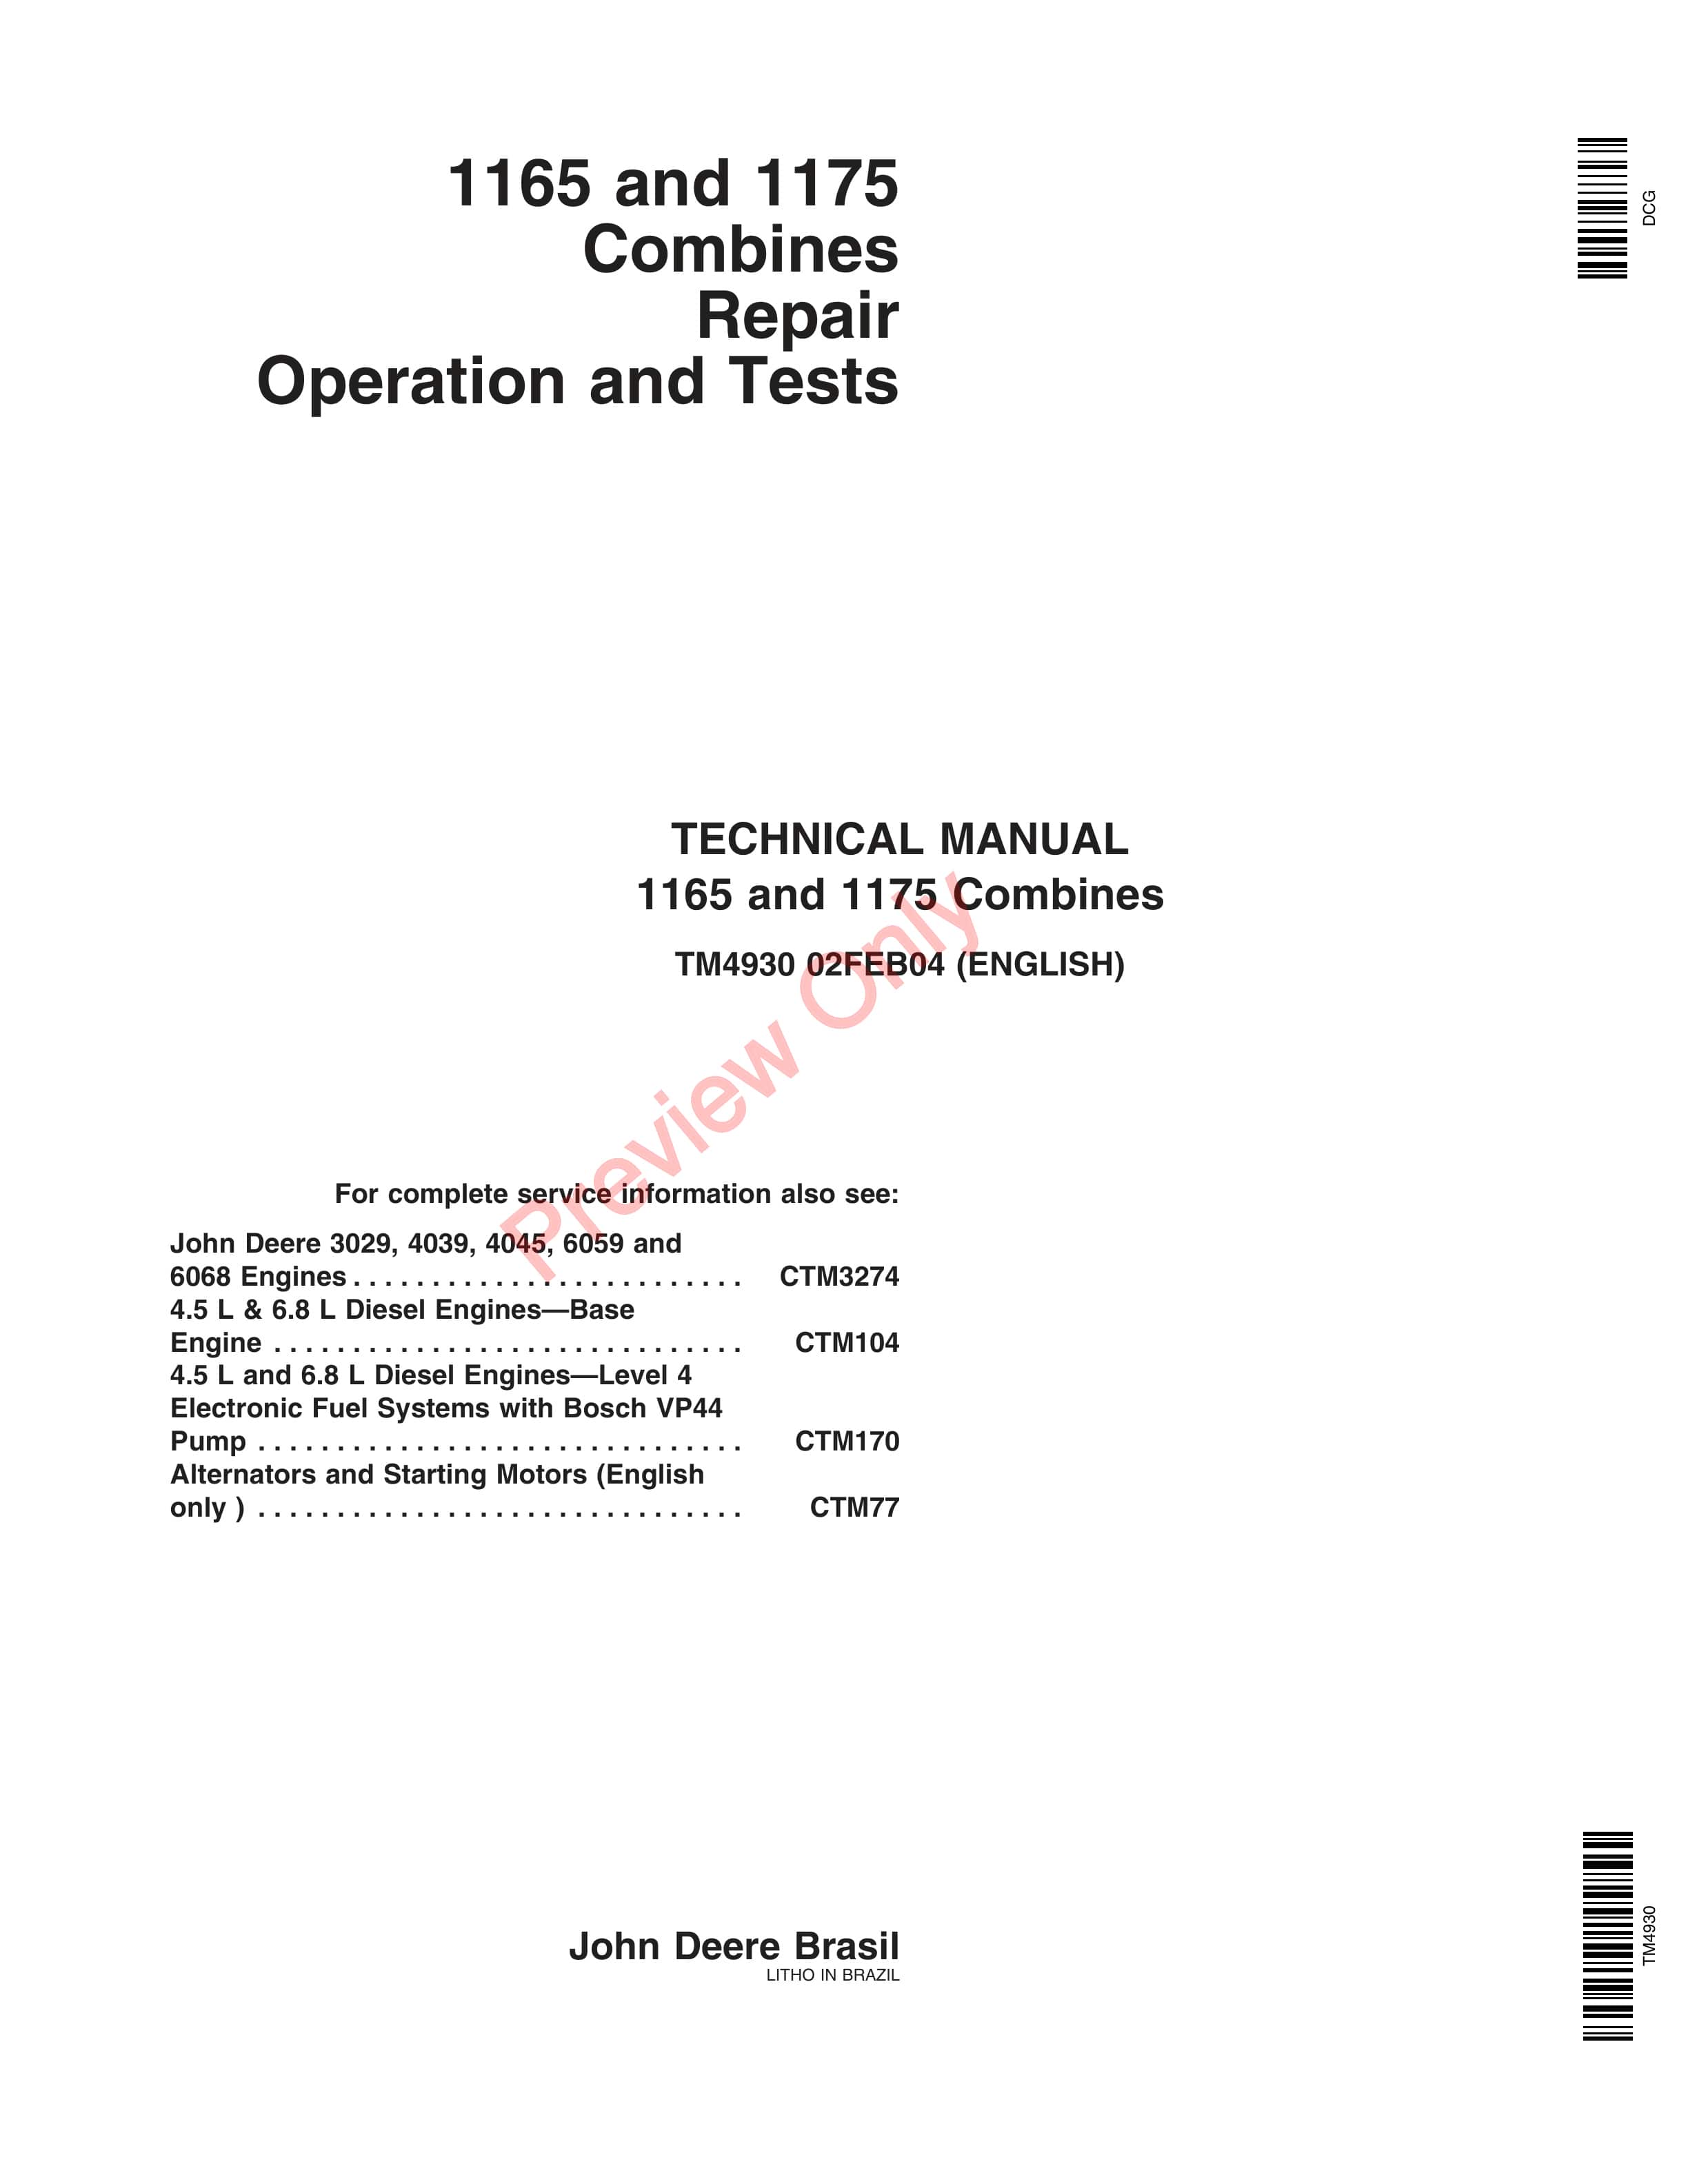 John Deere 1165 1175 Combines 5.9L6.8L Technical Manual TM4930 02FEB04 1